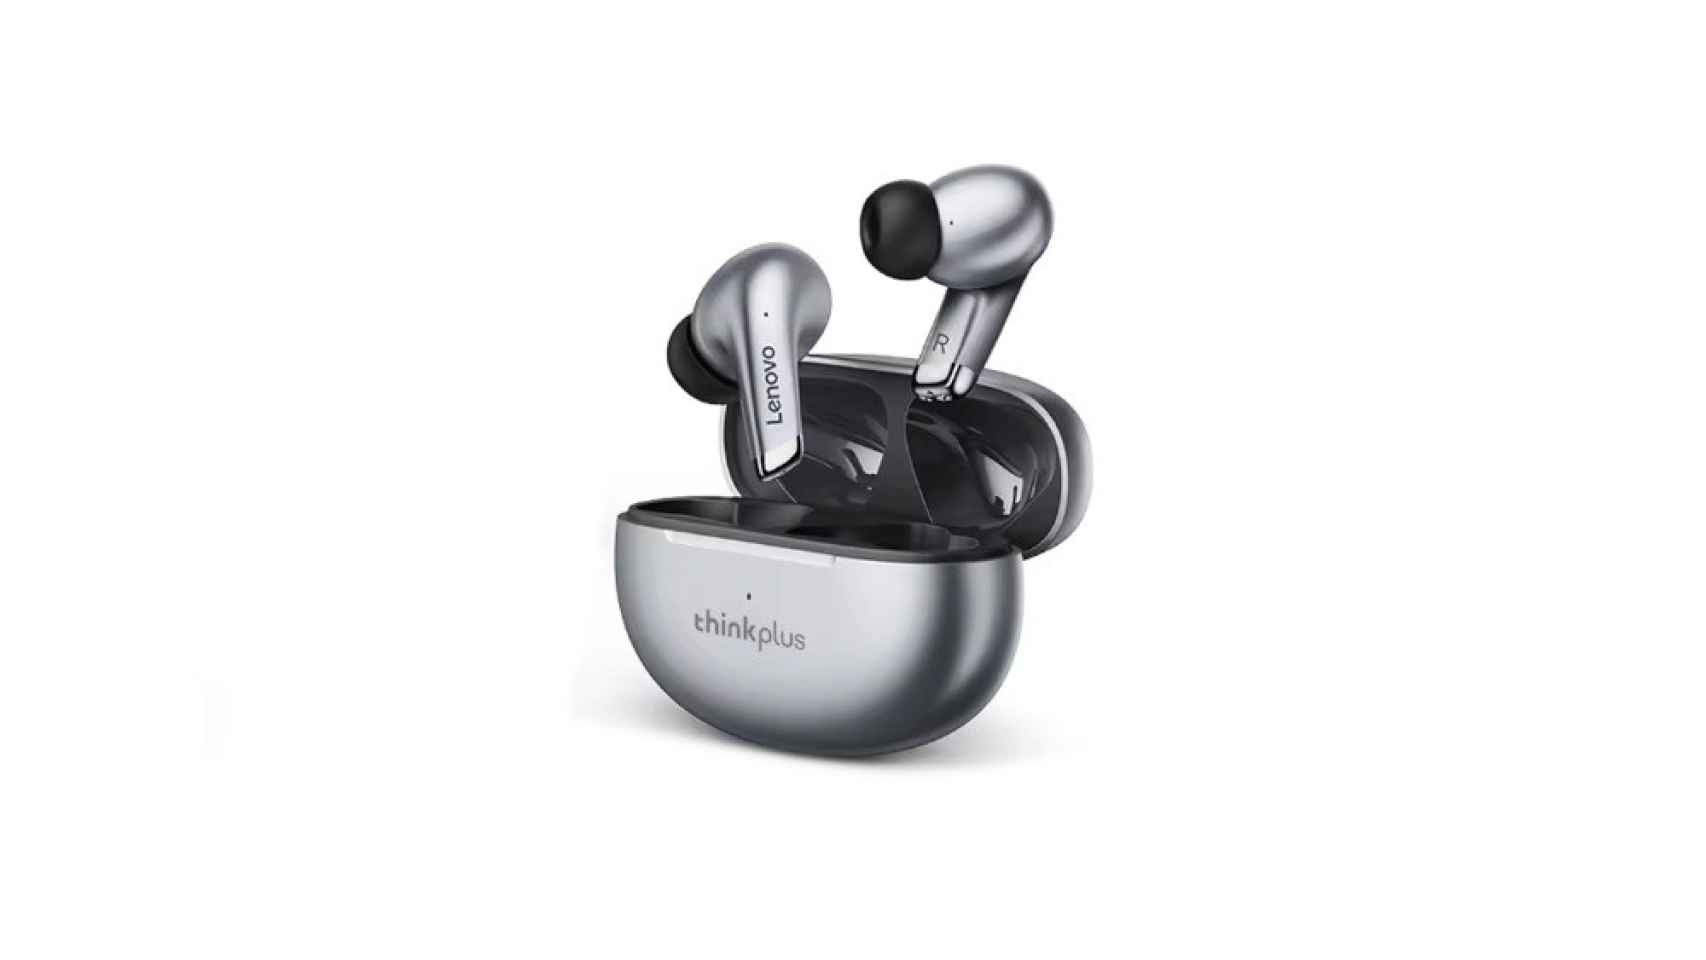 Ofertón en Miravia!: estos auriculares inalámbricos Lenovo suenan de  maravilla y cuestan menos de 6€